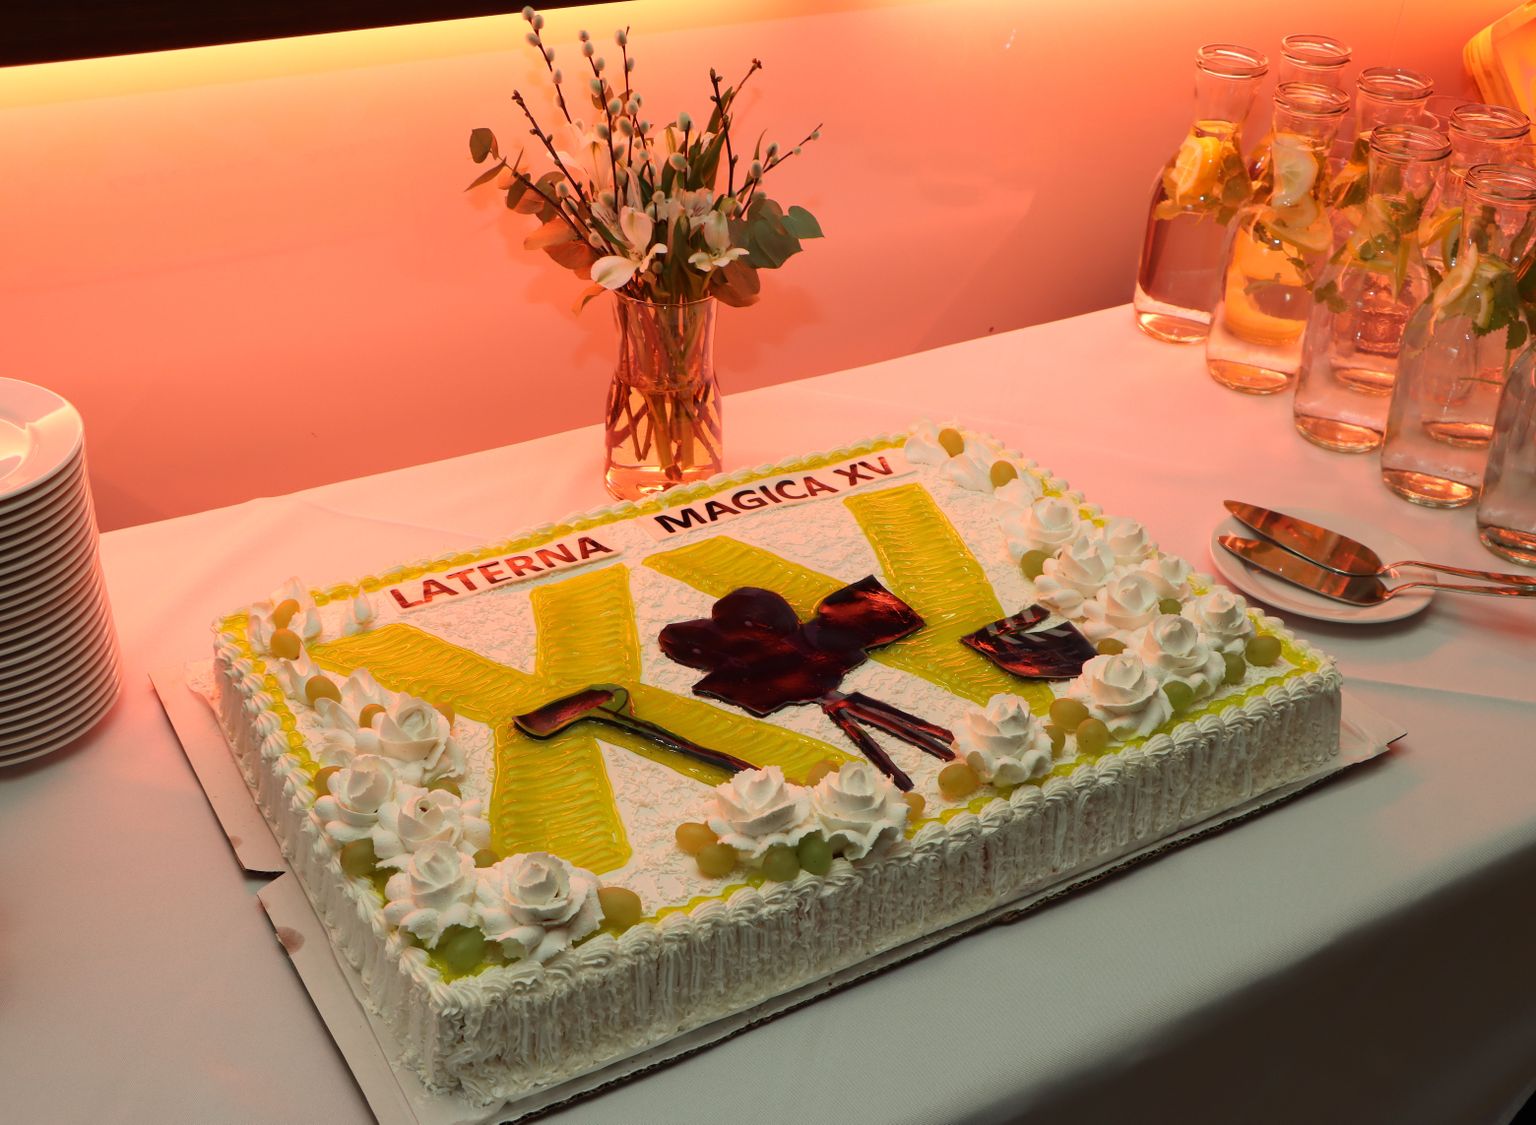 Праздничный торт по случаю завершения XV фестиваля "Laterna Magica".